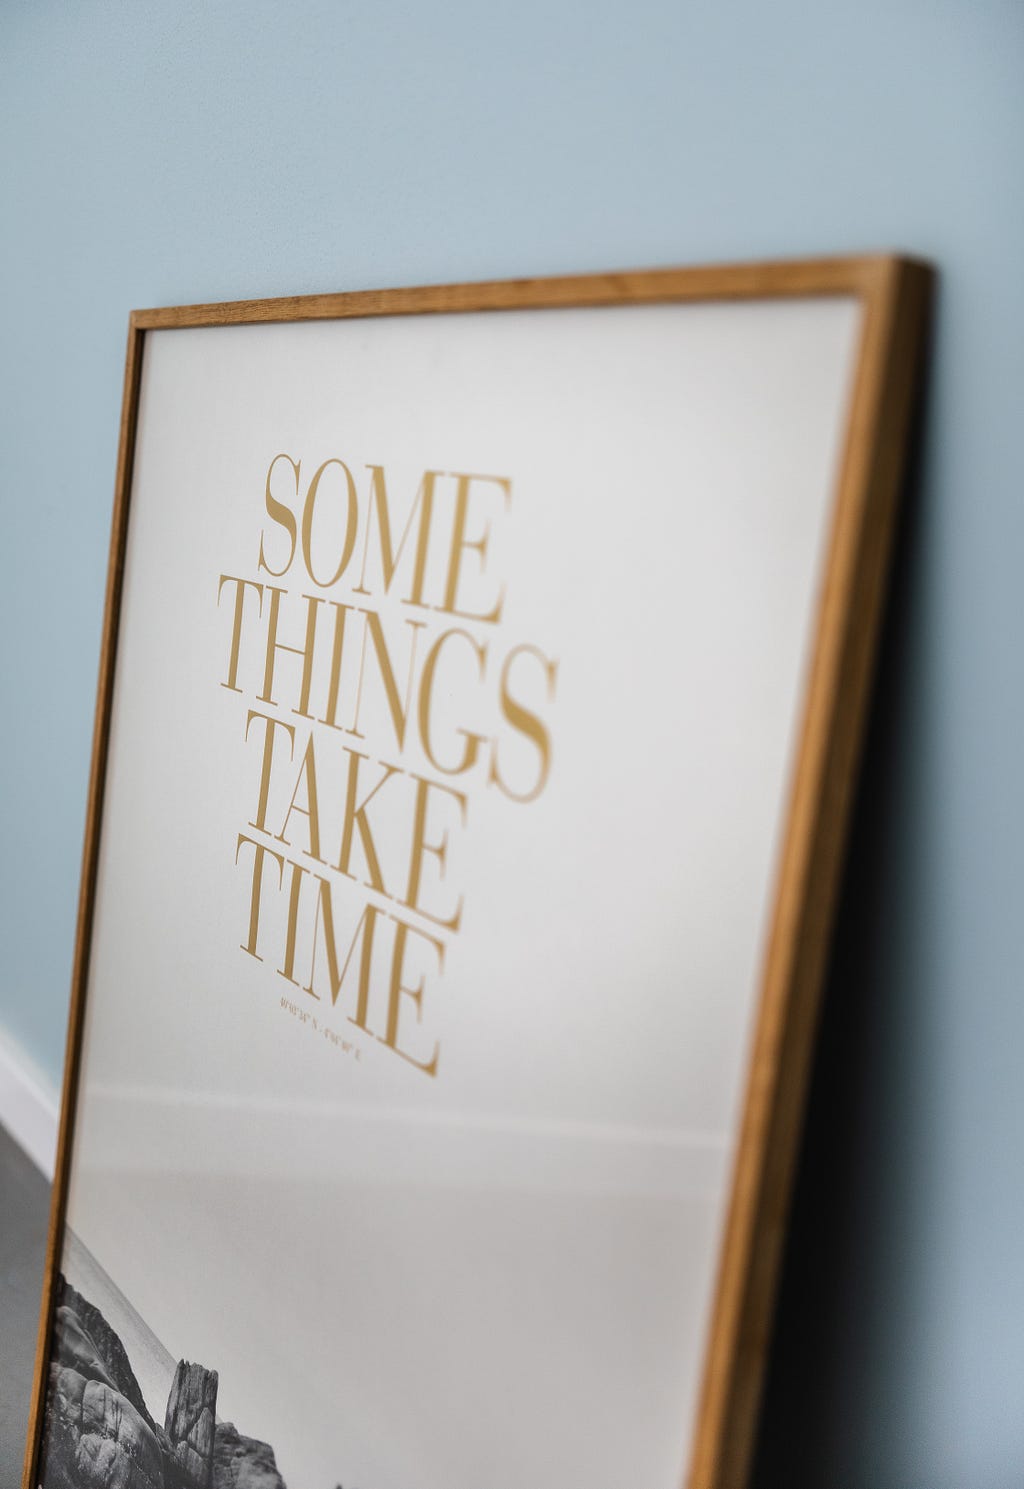 Quadro de fundo branco com moldura amadeirada com a frase “Some things take time” em dourado e letras em caixa alta